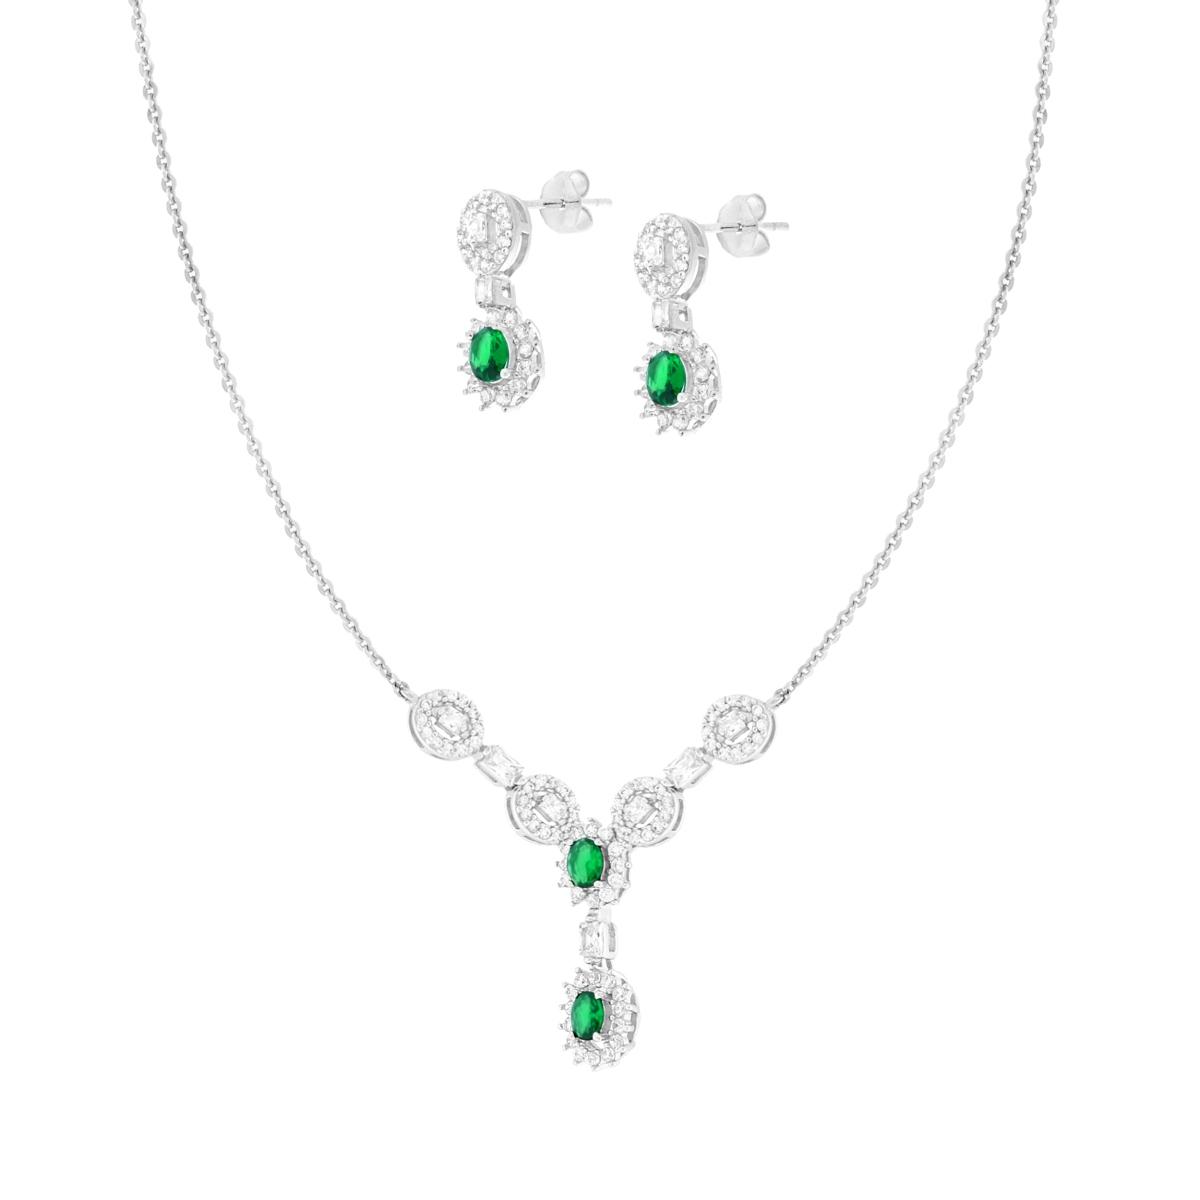 Parure Set Orecchini e Collana Ovali Verde Smeraldo contornati da Cubic Zirconia Bianchi in ARGENTO 925 Galvanica Rodio